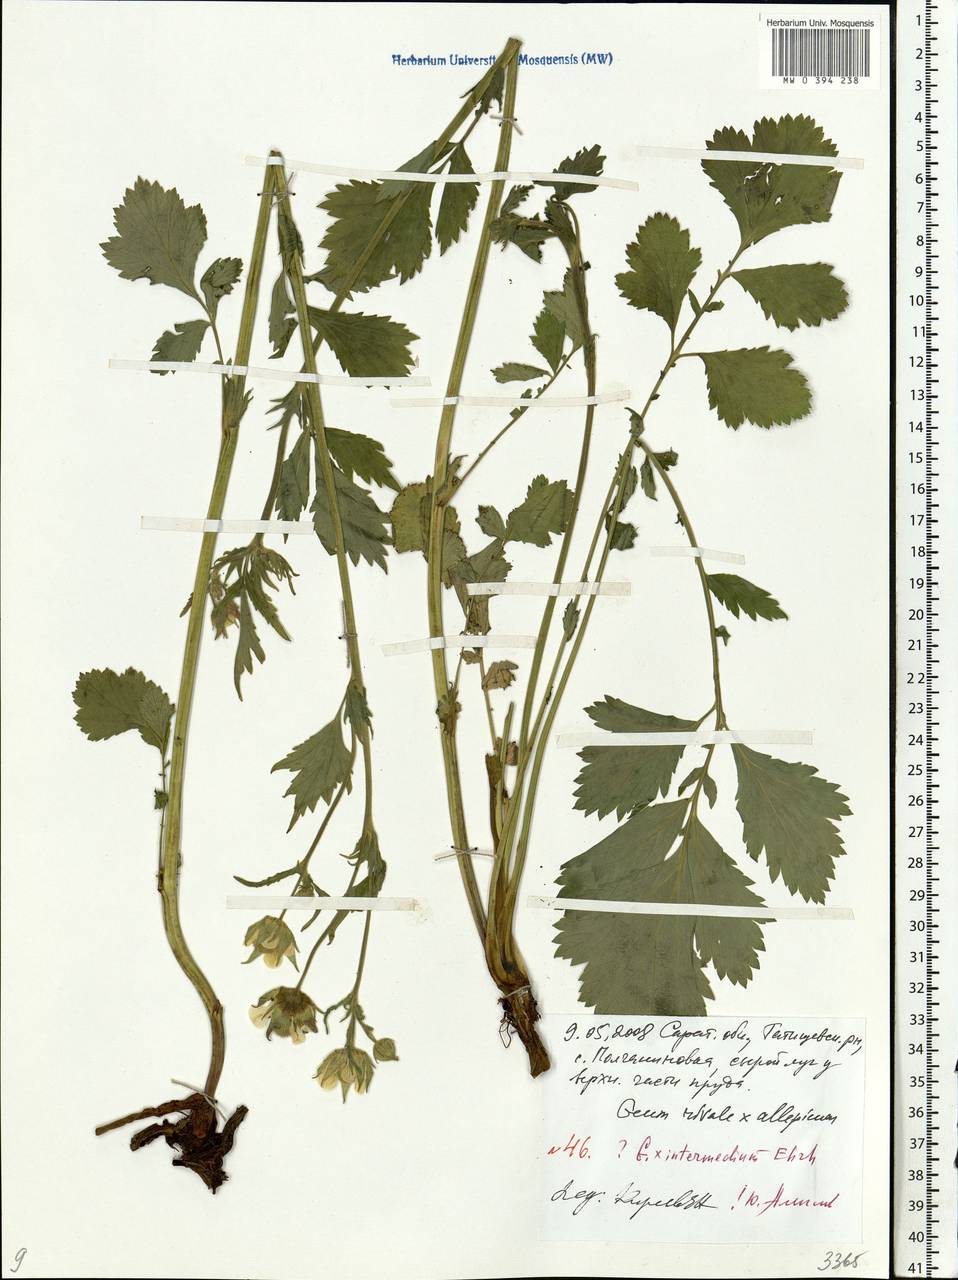 Geum × intermedium Ehrh., Eastern Europe, Lower Volga region (E9) (Russia)